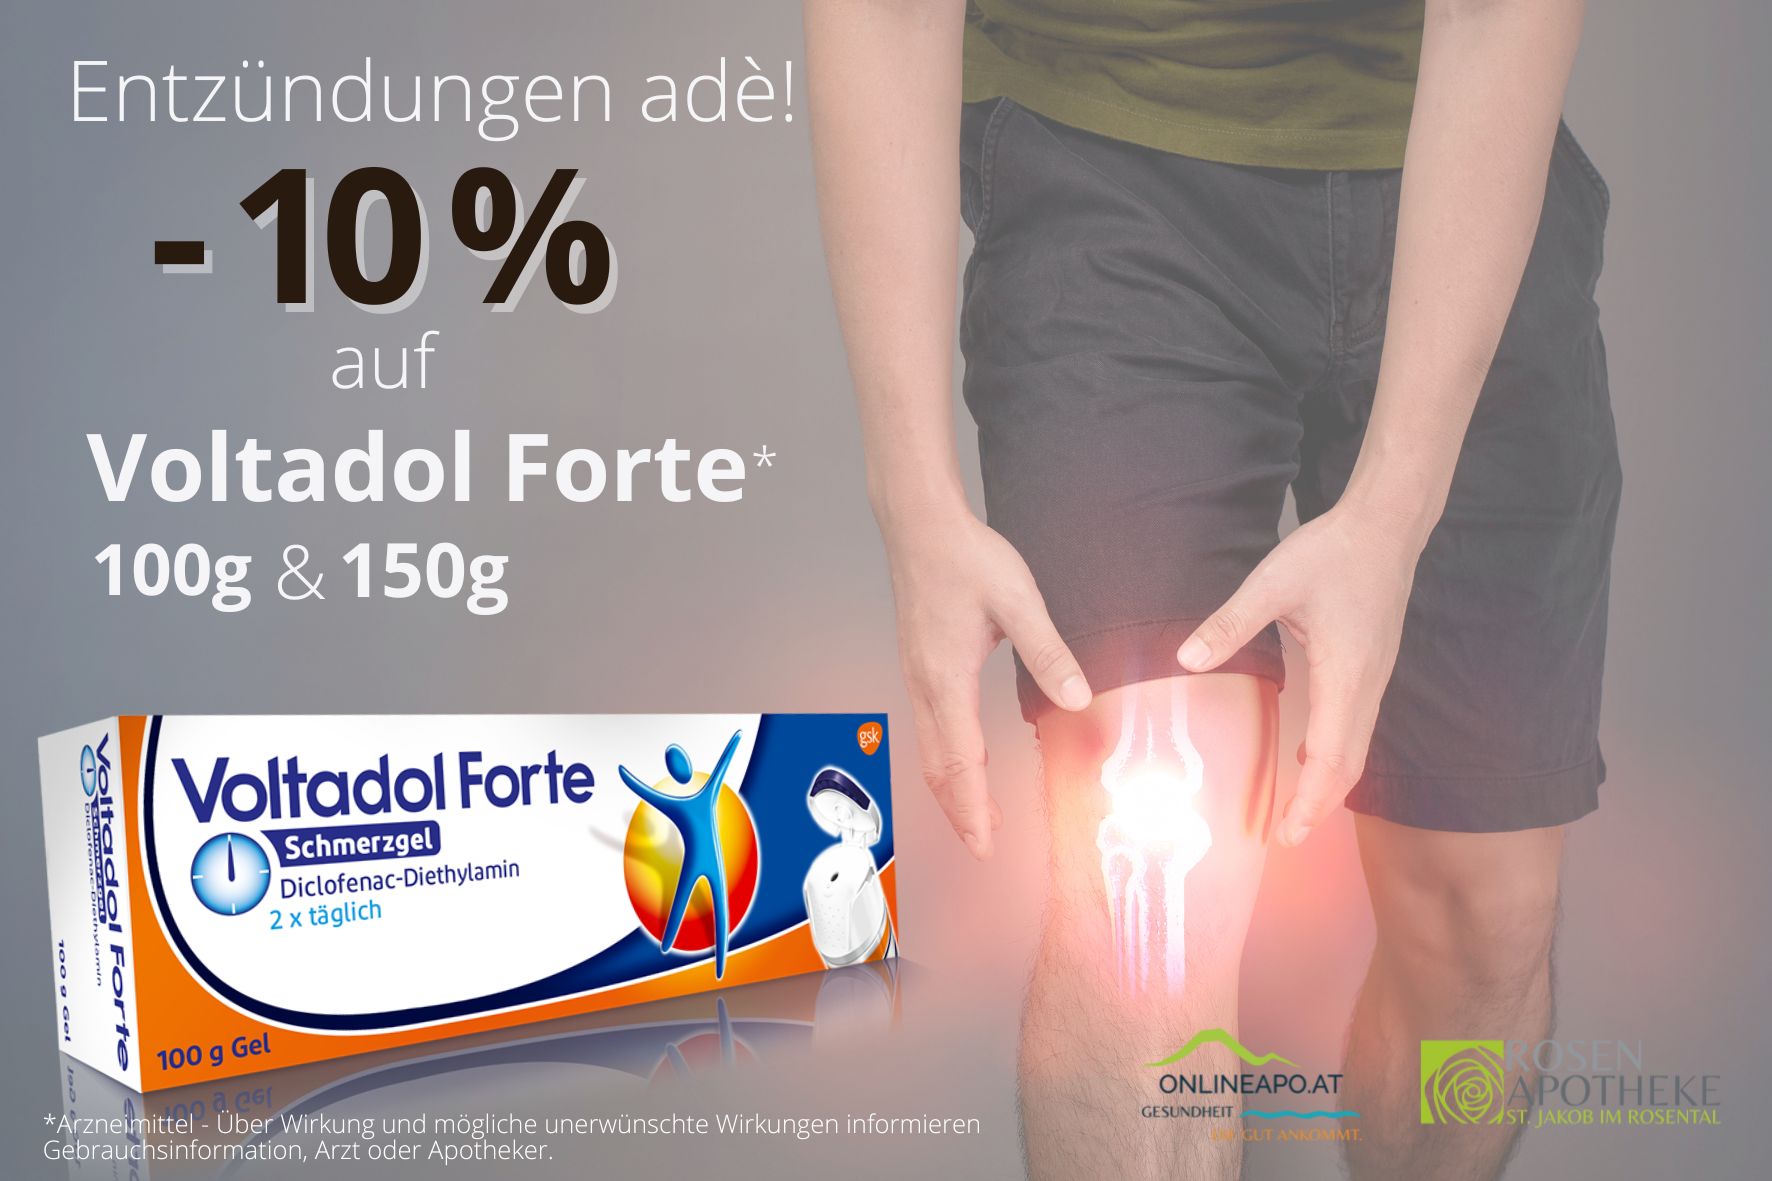 -10 % Rabatt auf Voltadol Forte